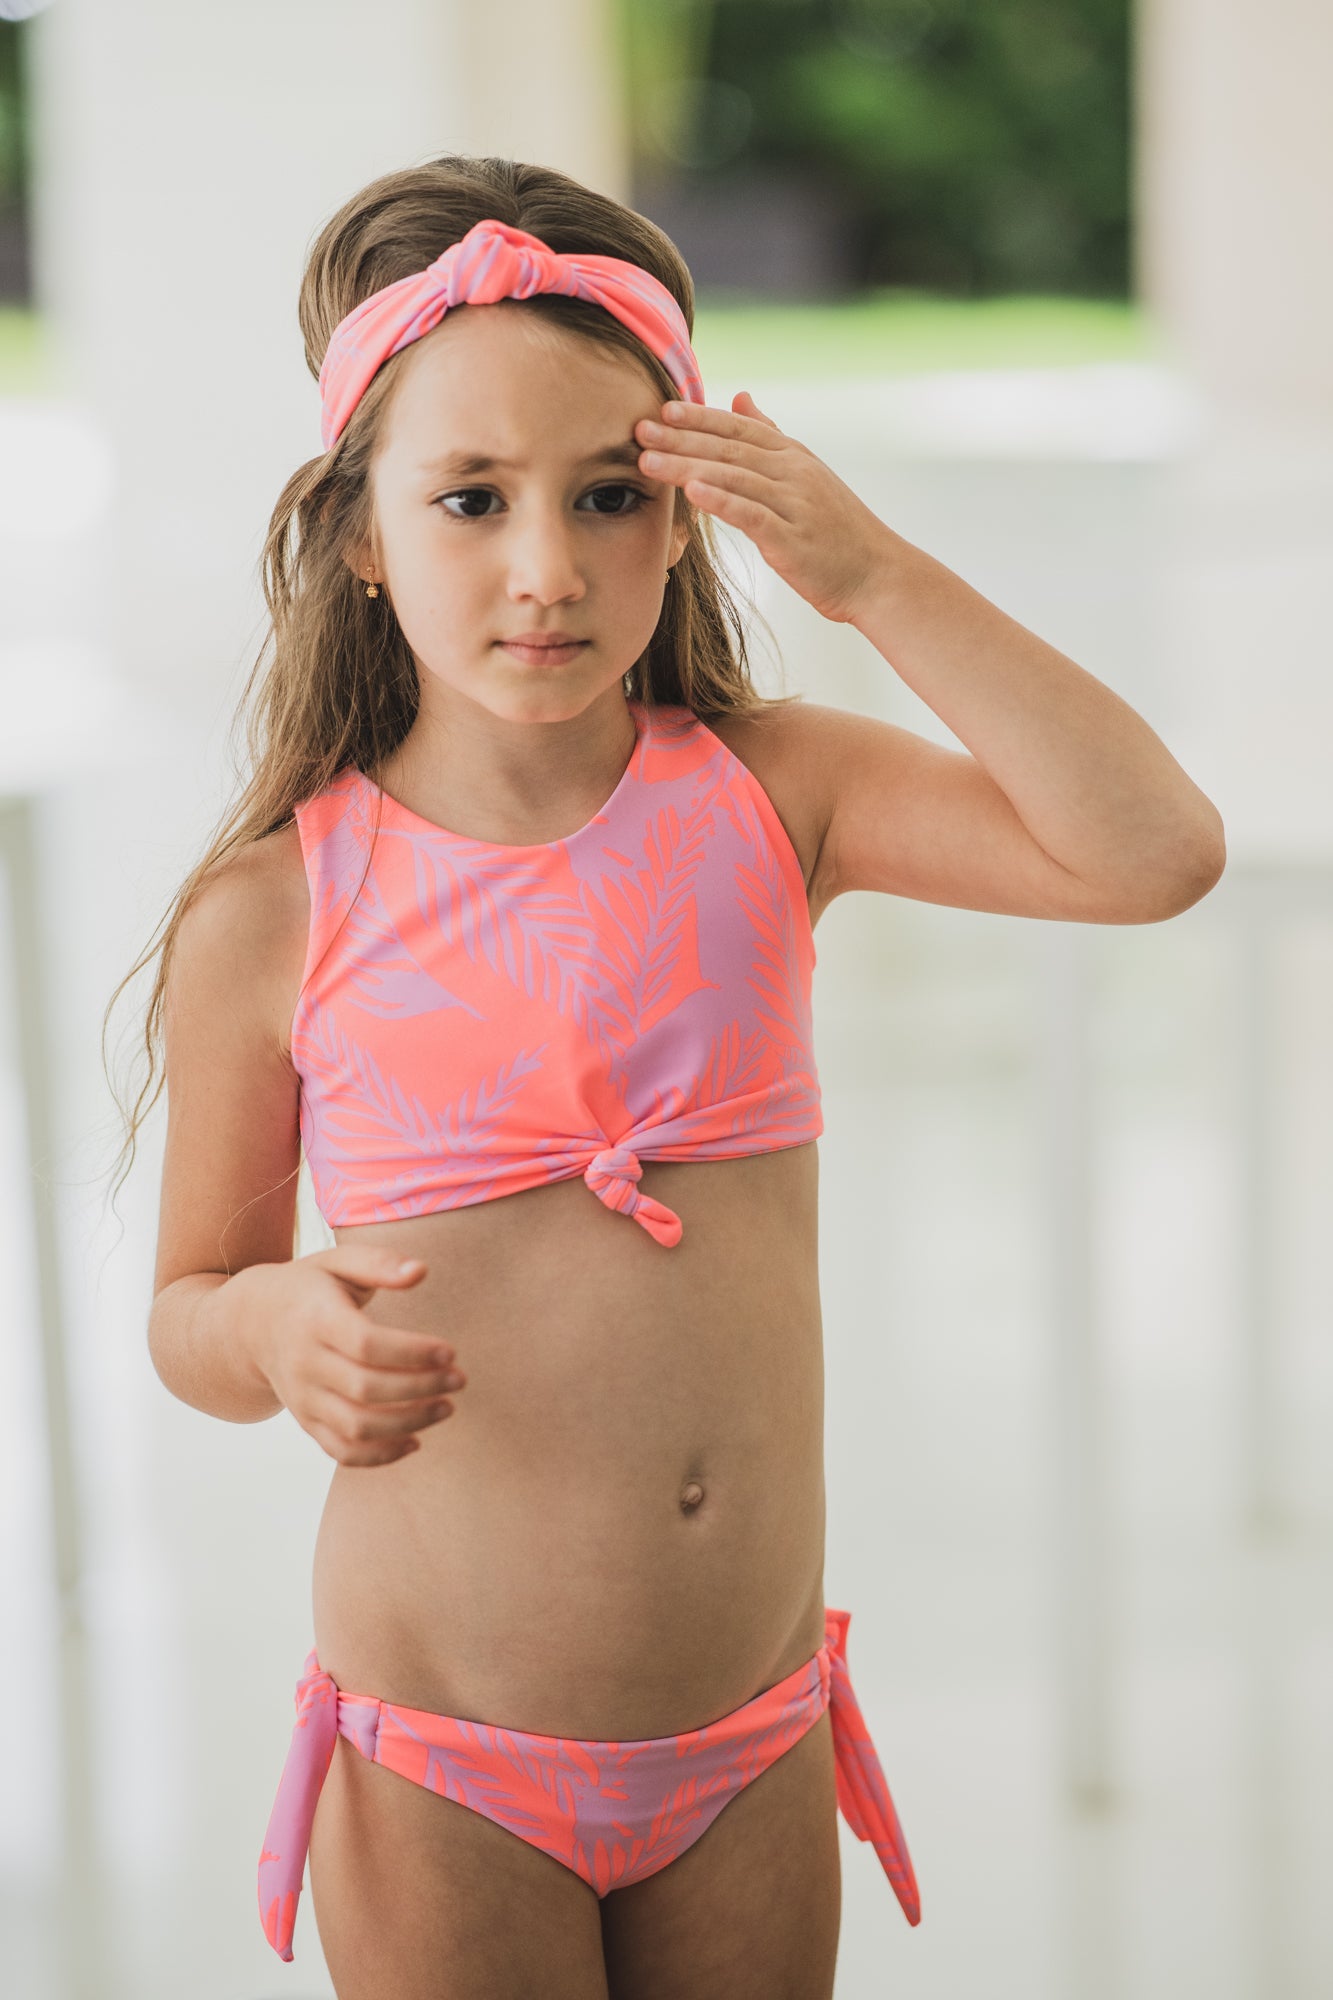 Pinkurple - Bikini swimsuit for girls – Too Cool Beachwear